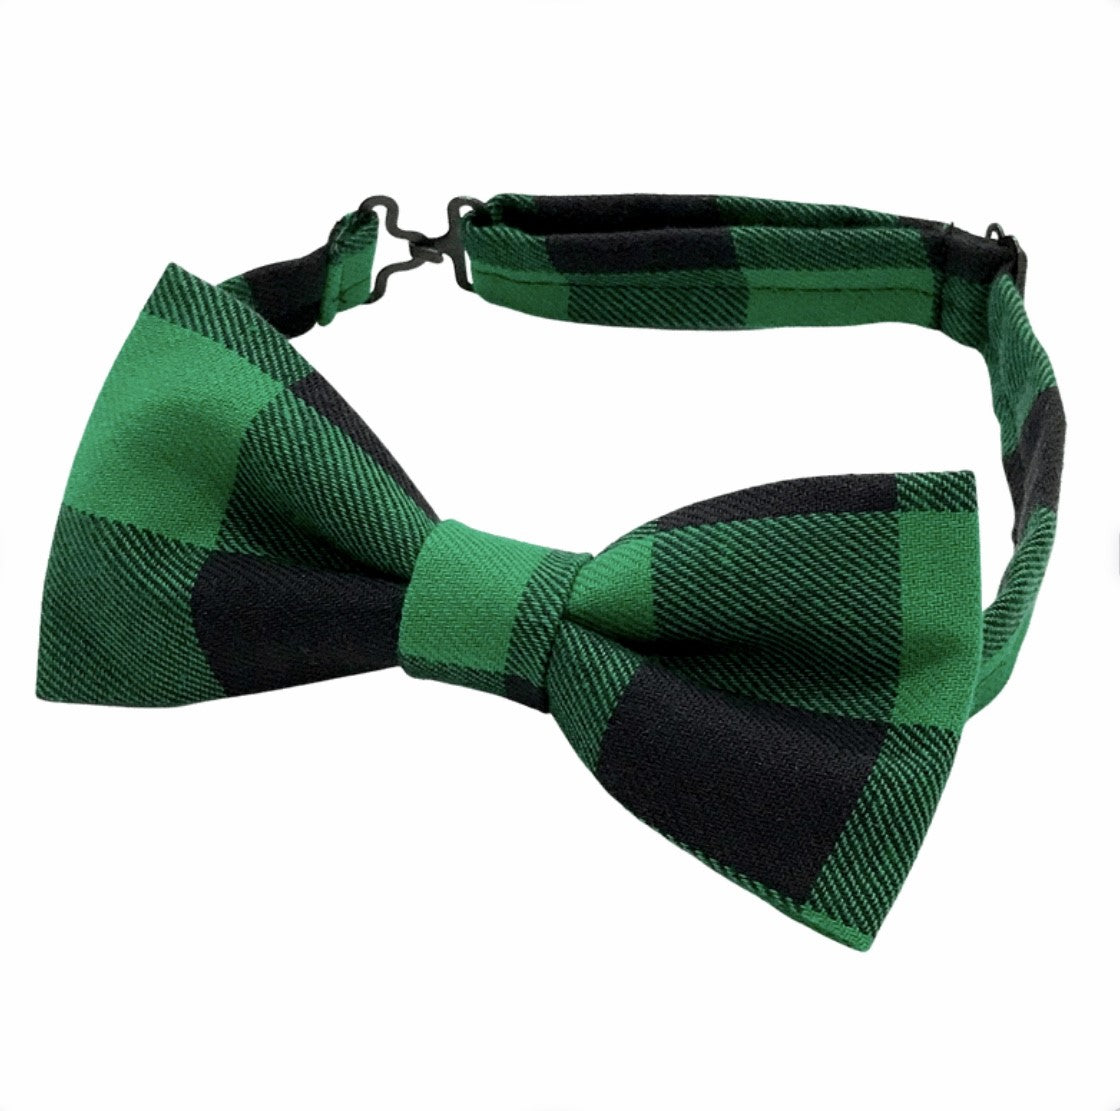 Green Plaid Christmas Bow tie 